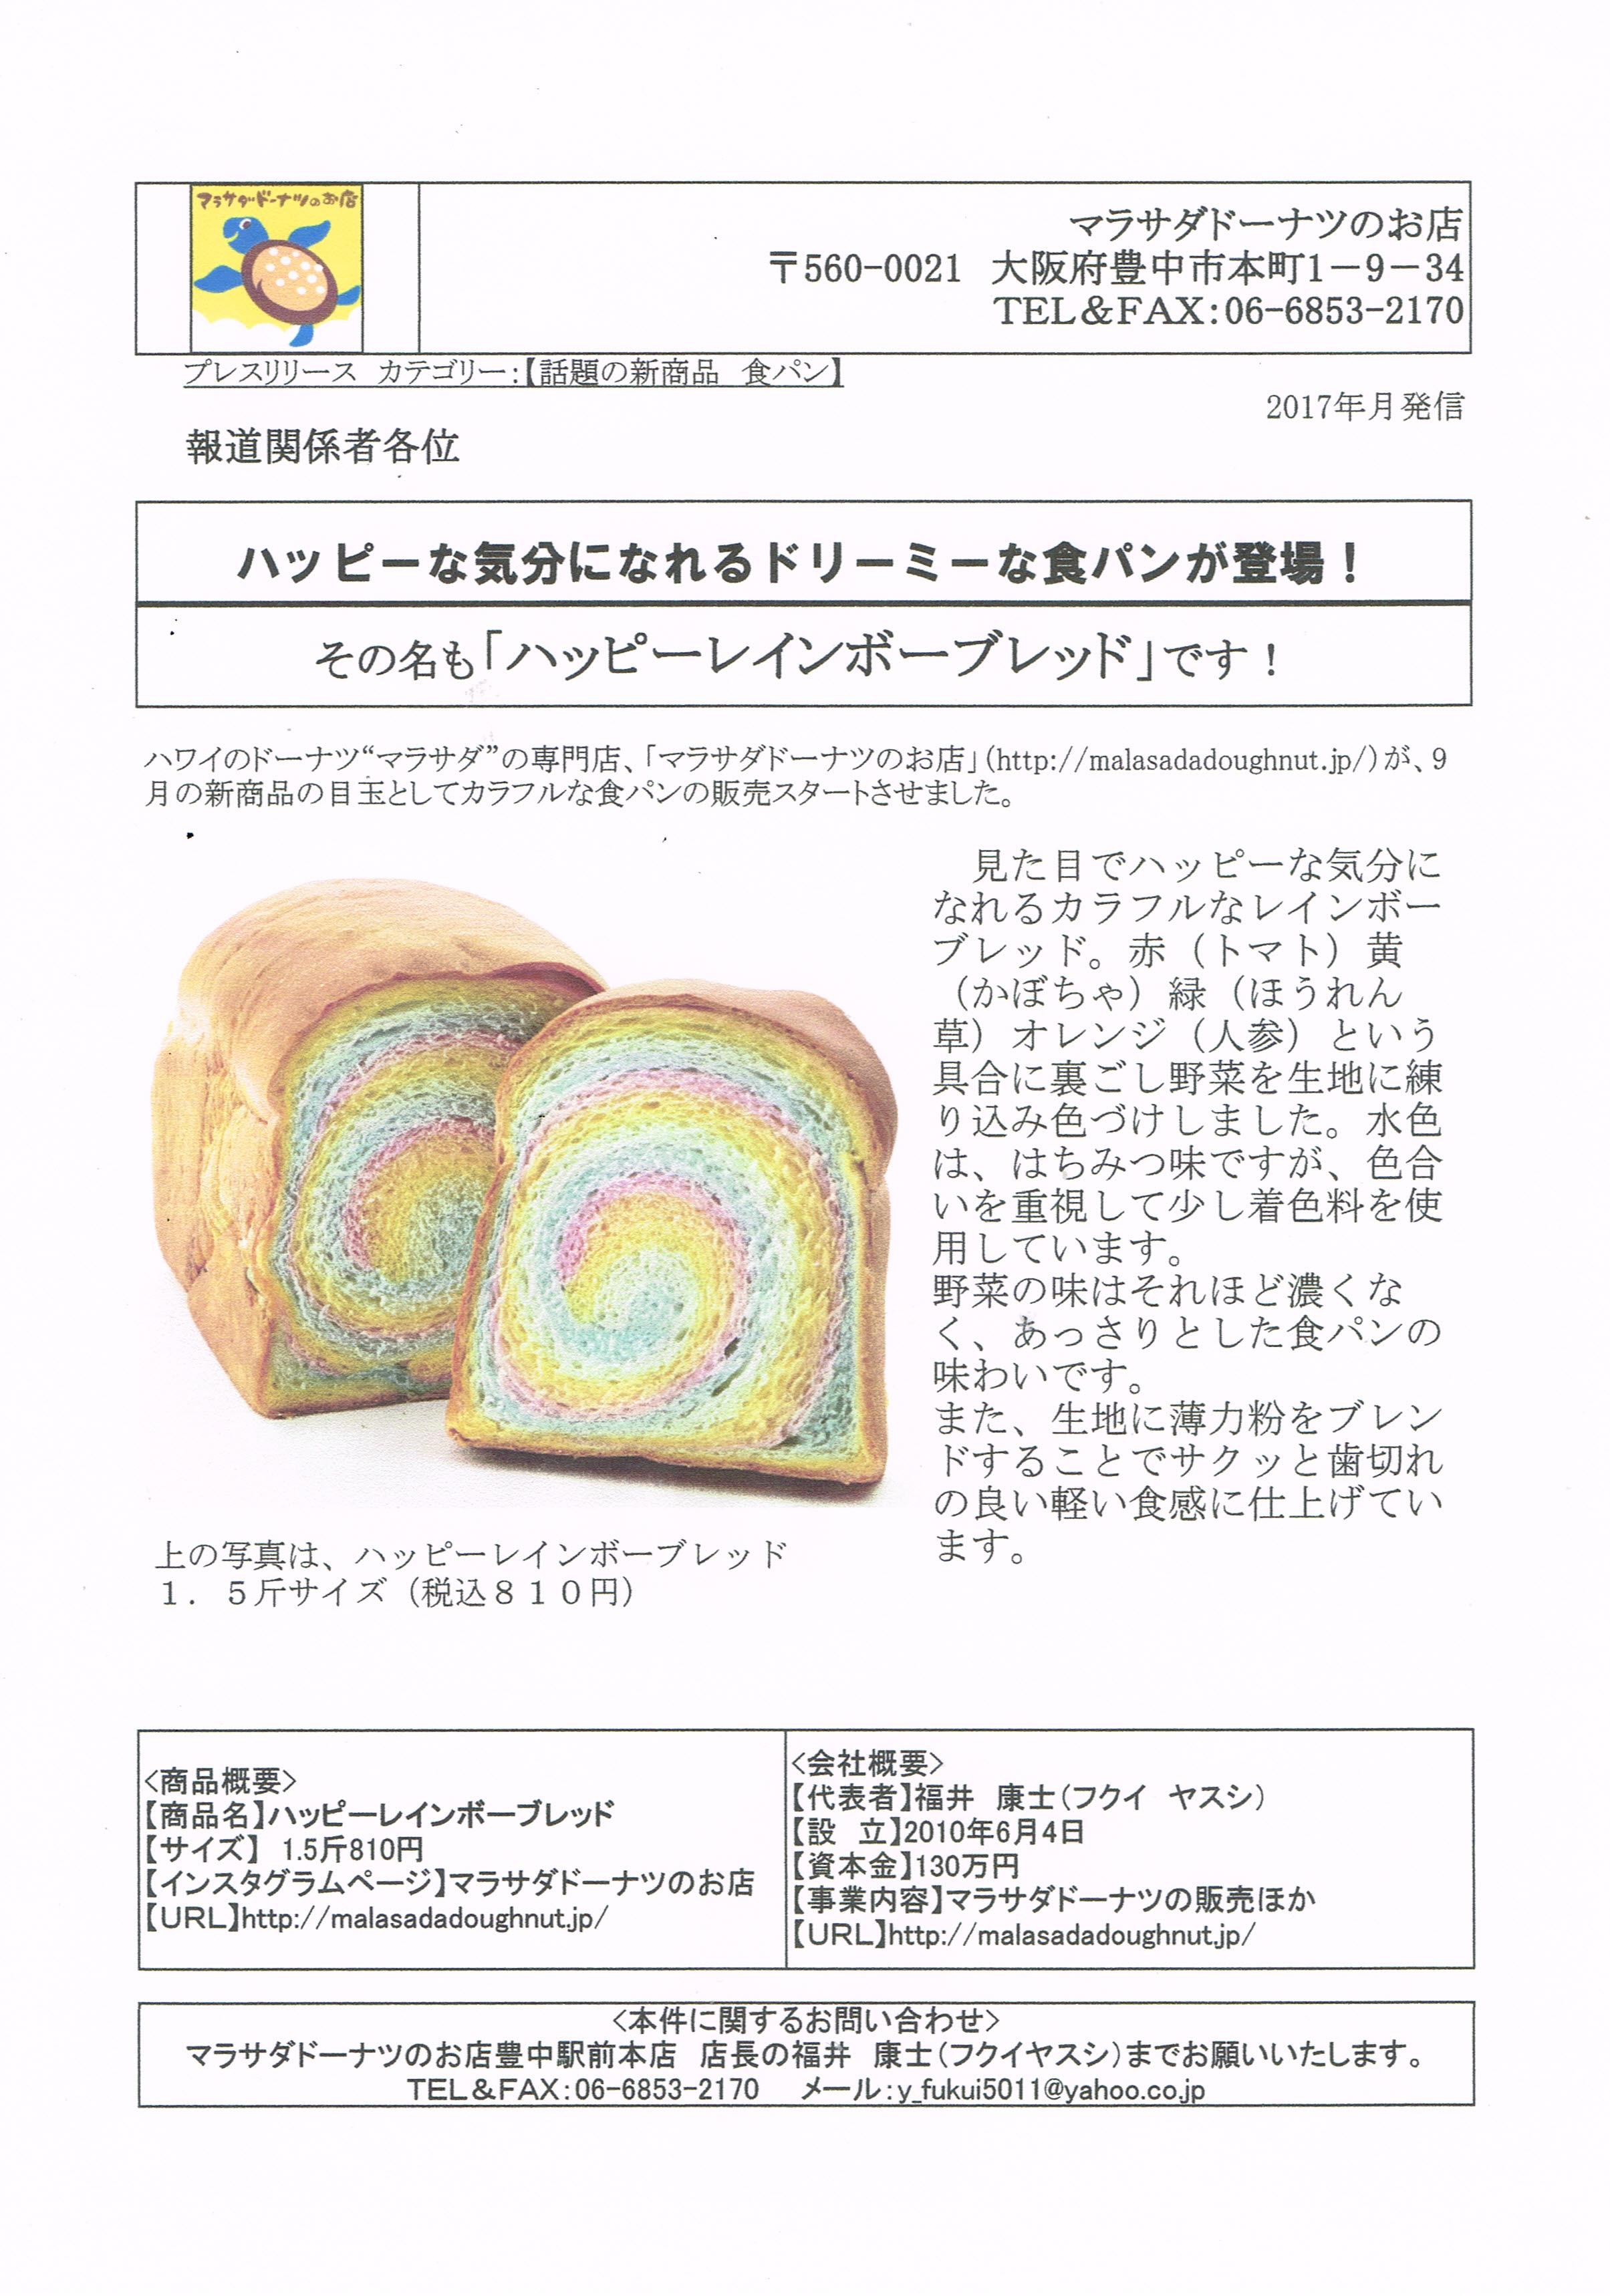 ハッピーになれる虹色の食パン ハッピーレインボーブレッド が新登場 見た目のインパクト大 今まで見たことがないカラフルな食パンです Prでっせ